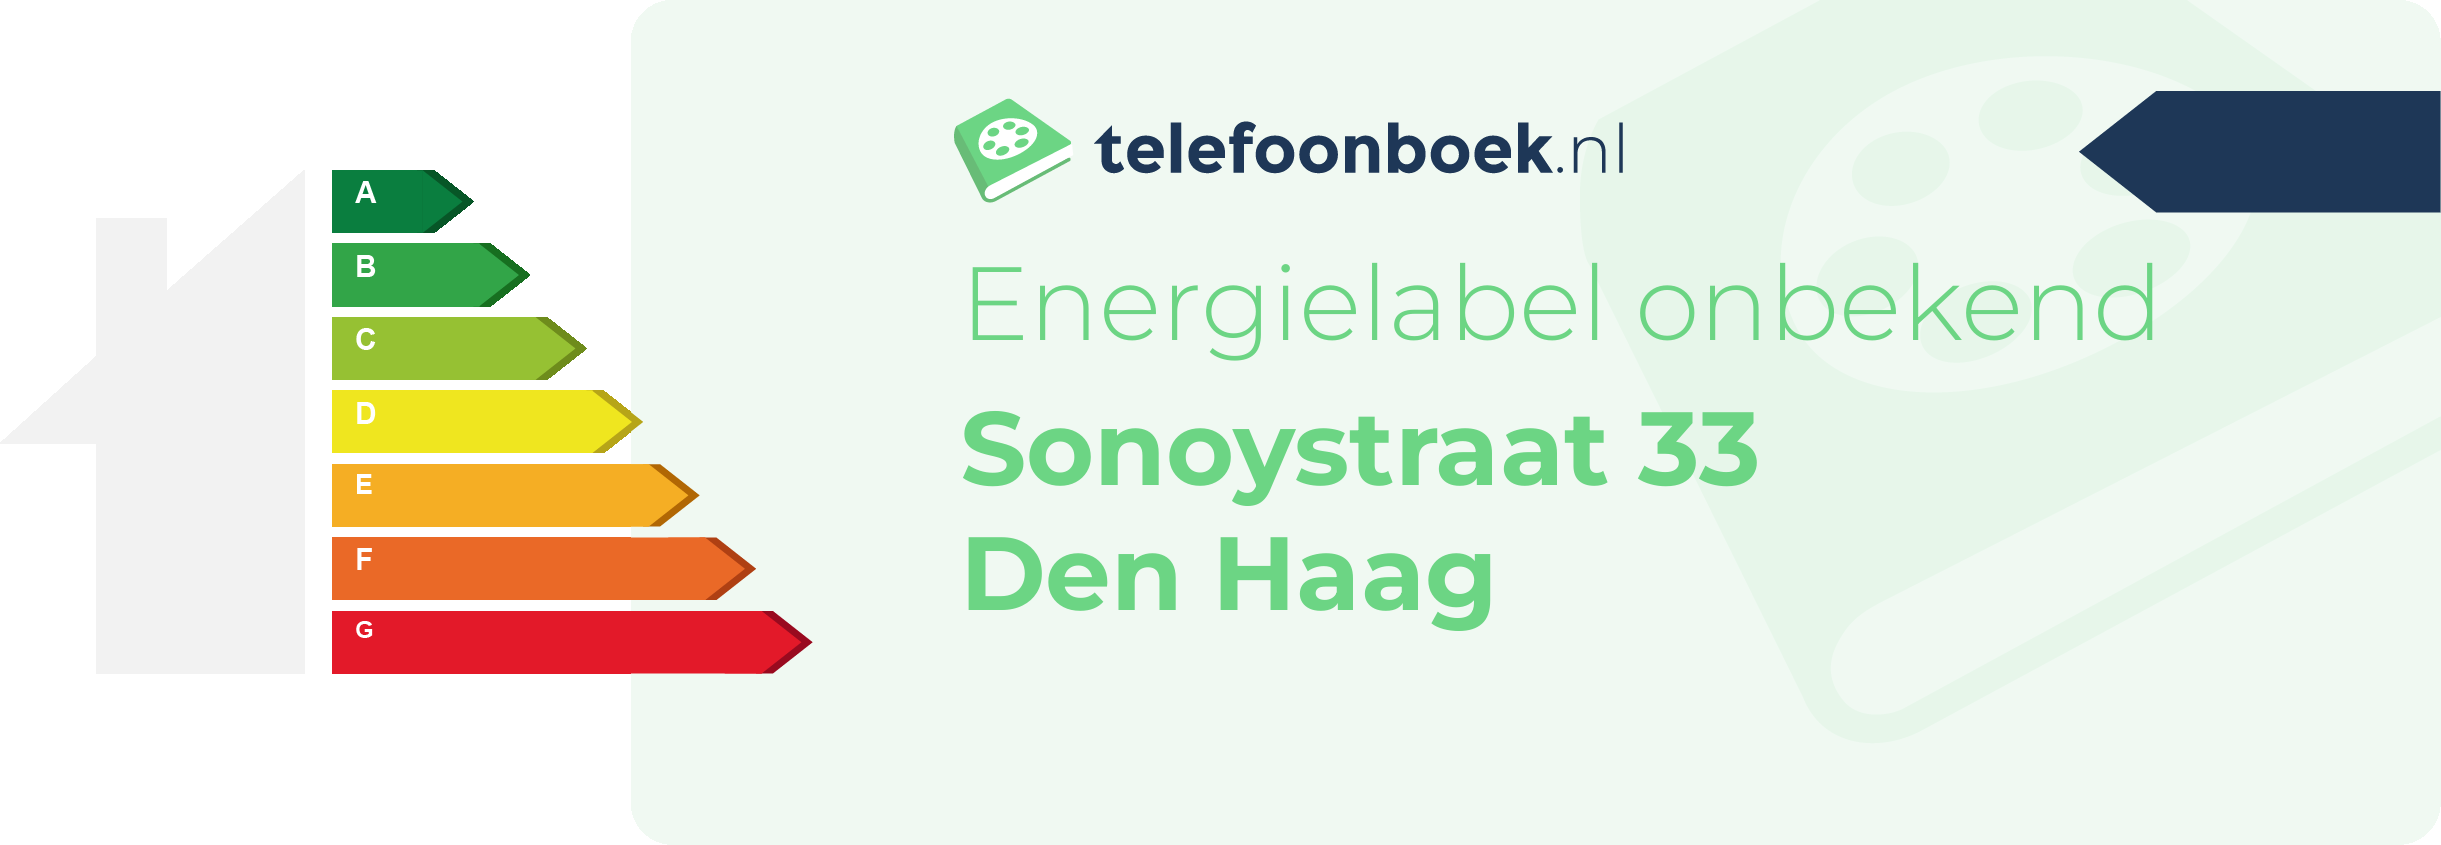 Energielabel Sonoystraat 33 Den Haag